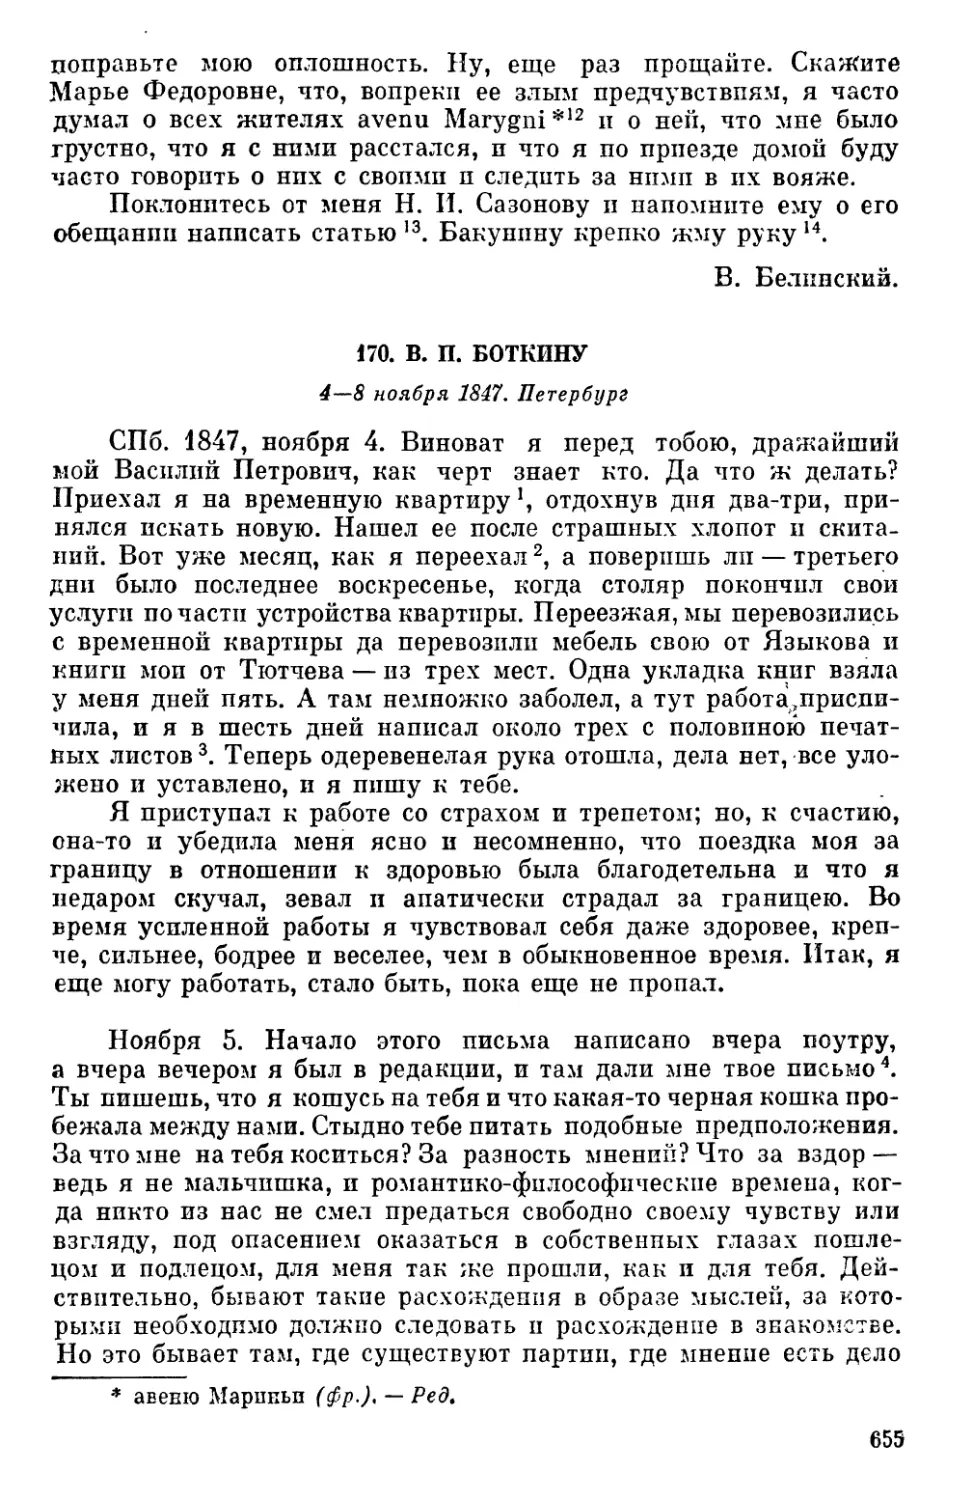 170. В. П. Боткину. 4—8 ноября 1847